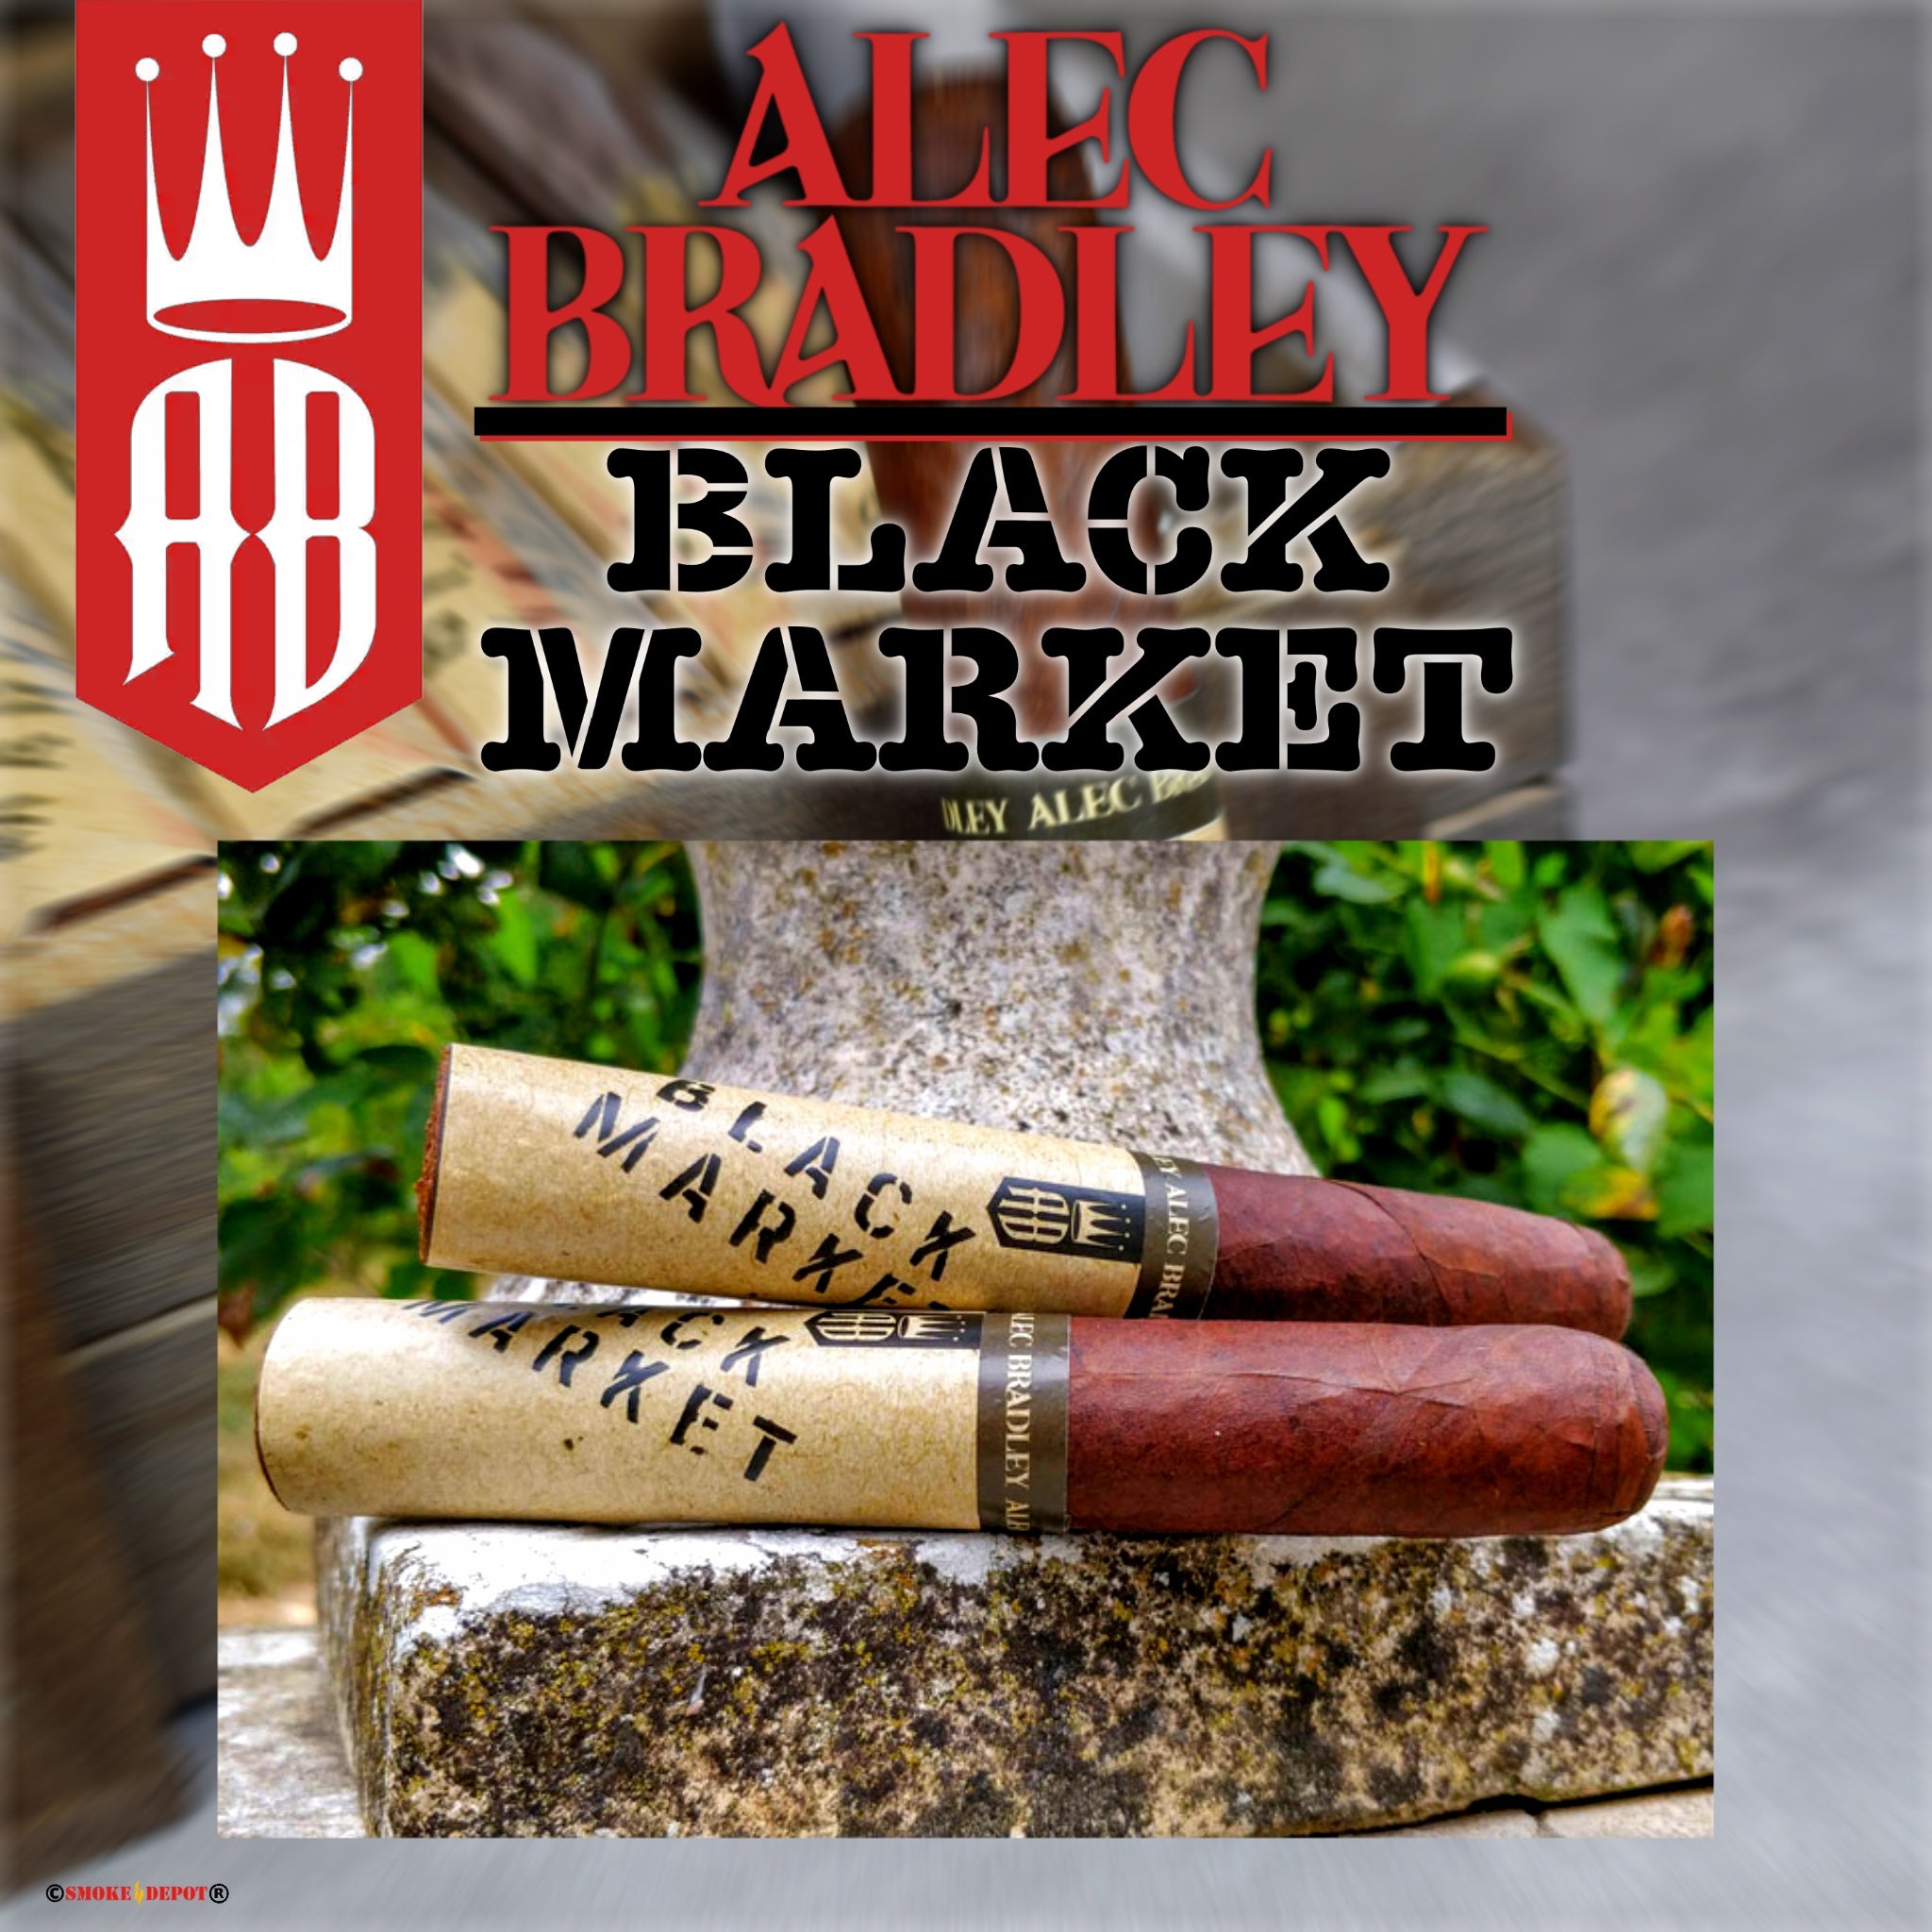 ALEC BRADLEY Black Market